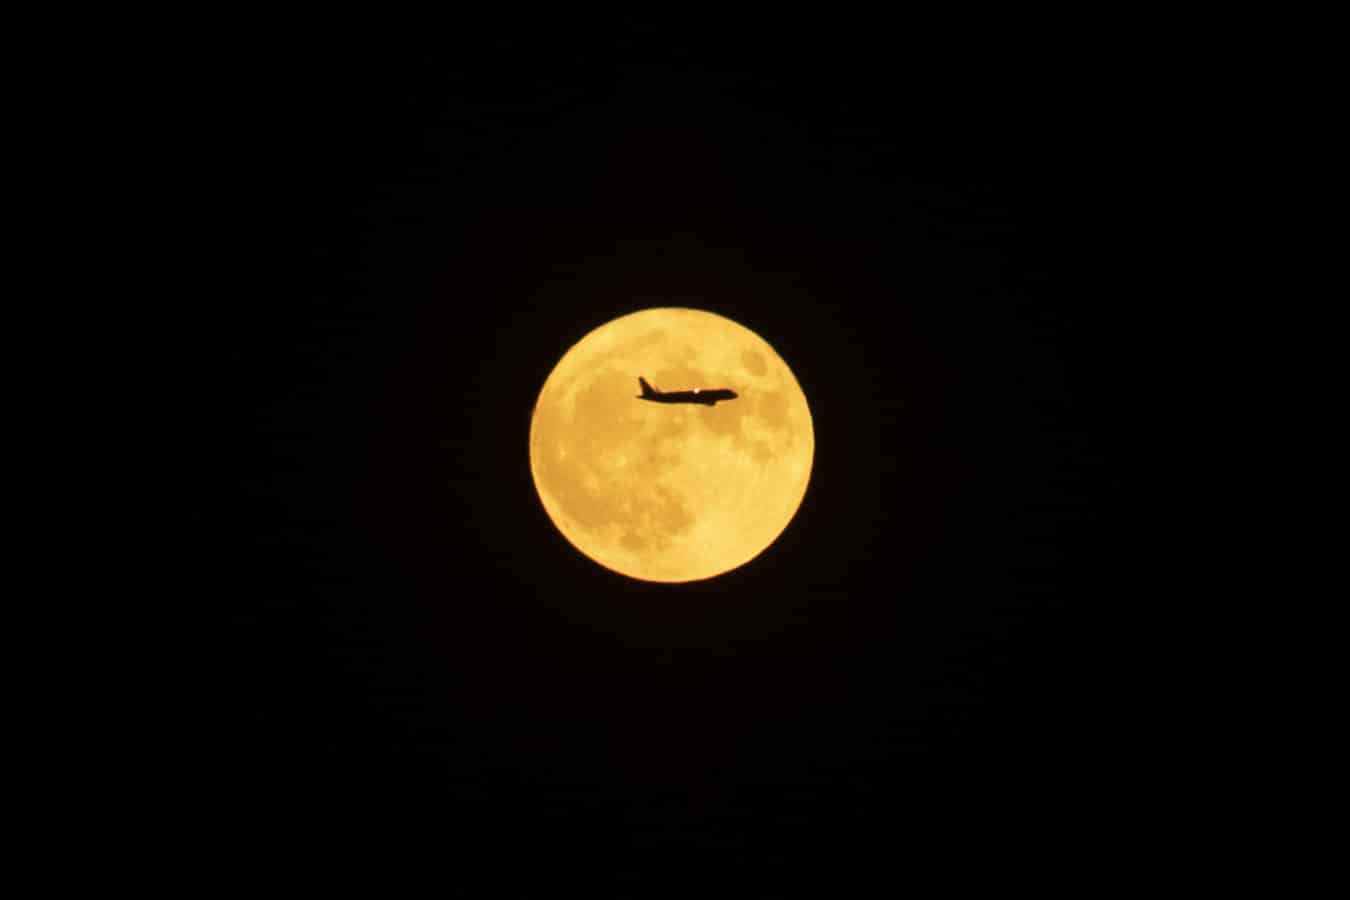 Un avión en dirección al aeropuerto del Prat pasa por delante de la primera luna llena de verano esta noche sobre el cielo de Barcelona.